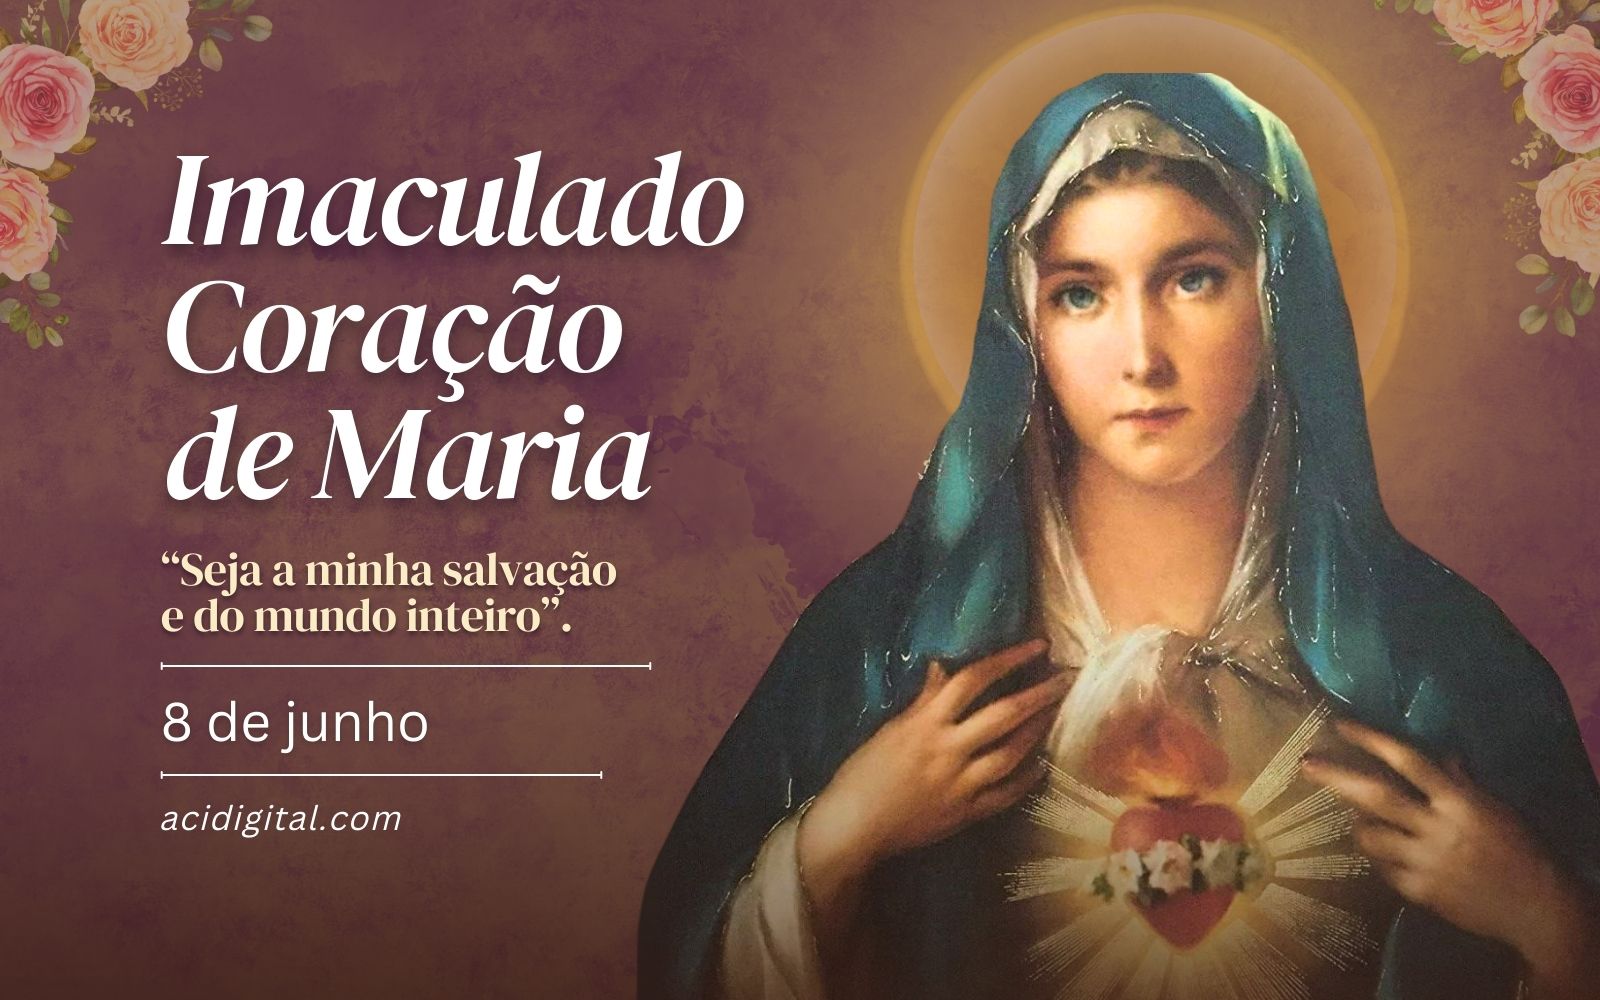 Igreja celebra o Imaculado Coração de Maria